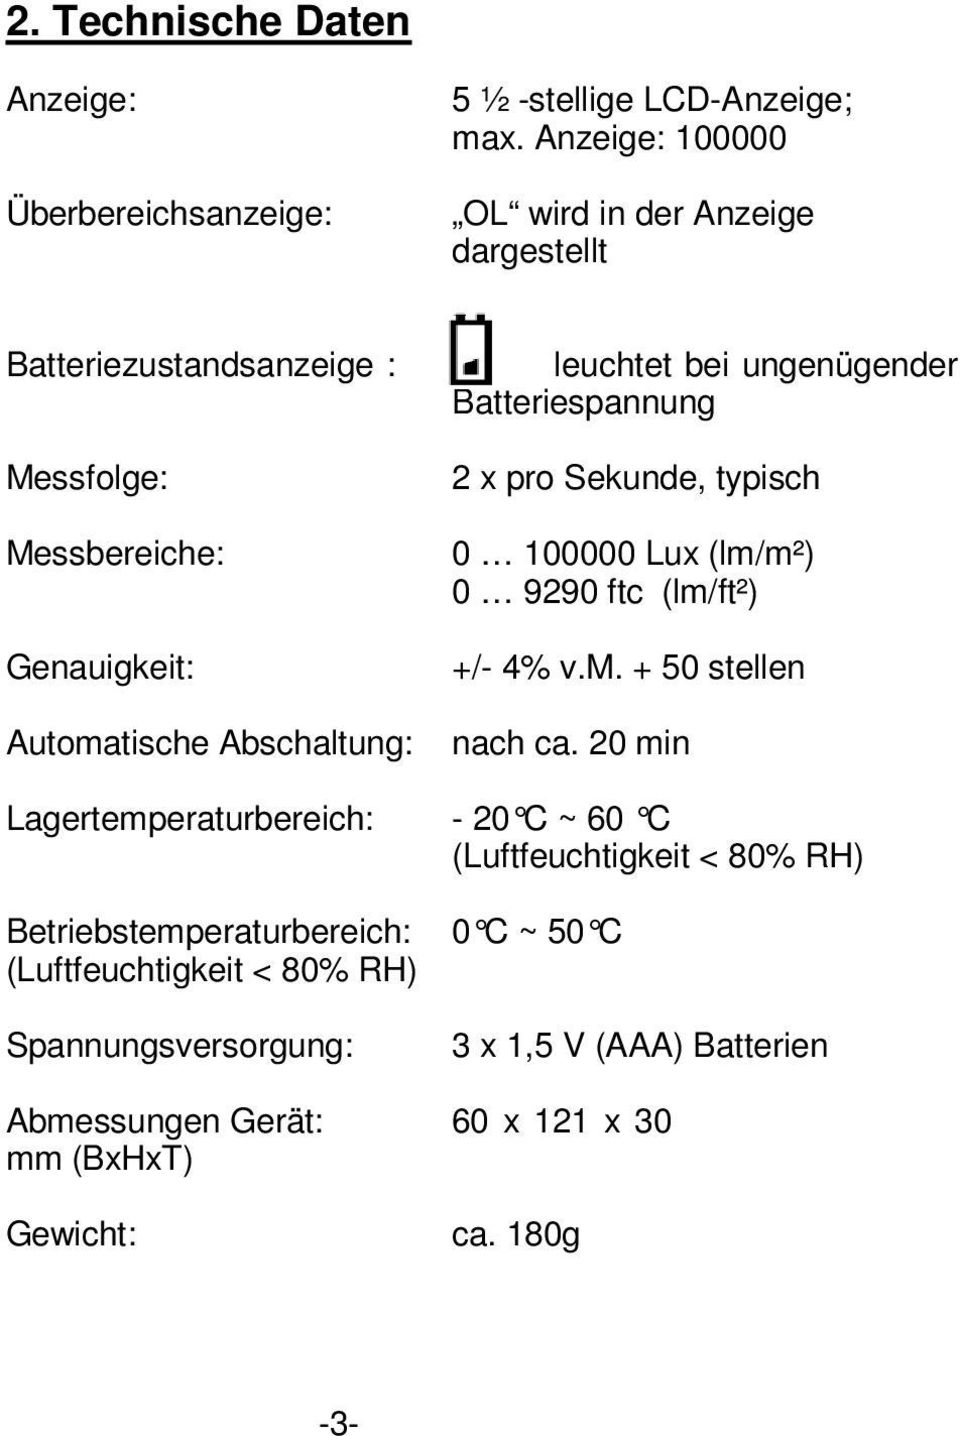 ungenügender Batteriespannung 2 x pro Sekunde, typisch 0 100000 Lux (lm/m²) 0 9290 ftc (lm/ft²) +/- 4% v.m. + 50 stellen nach ca.